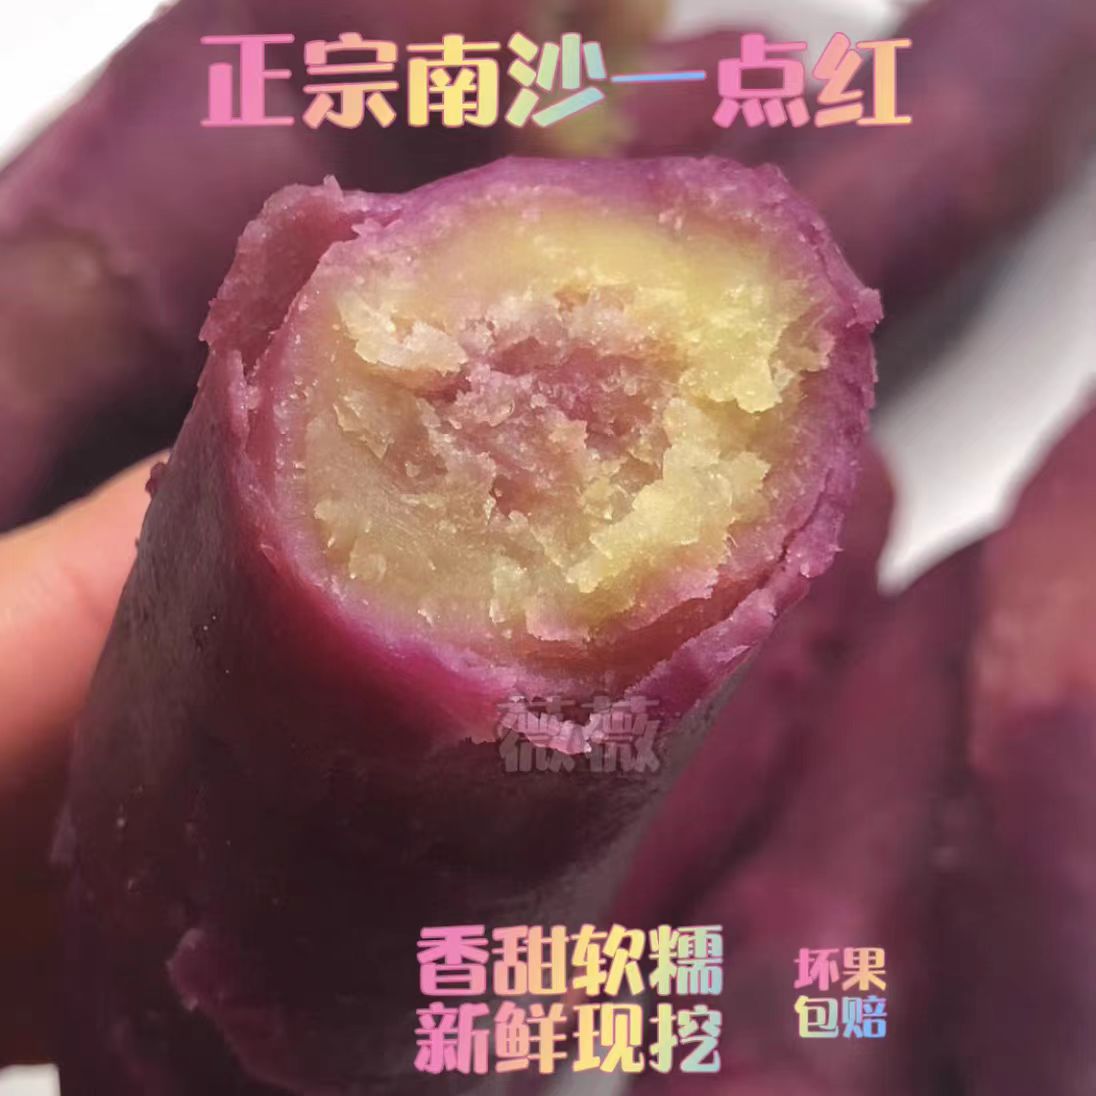 包邮5斤广州南沙一点红番薯新鲜现挖紫皮黄心板栗软糯香甜口感